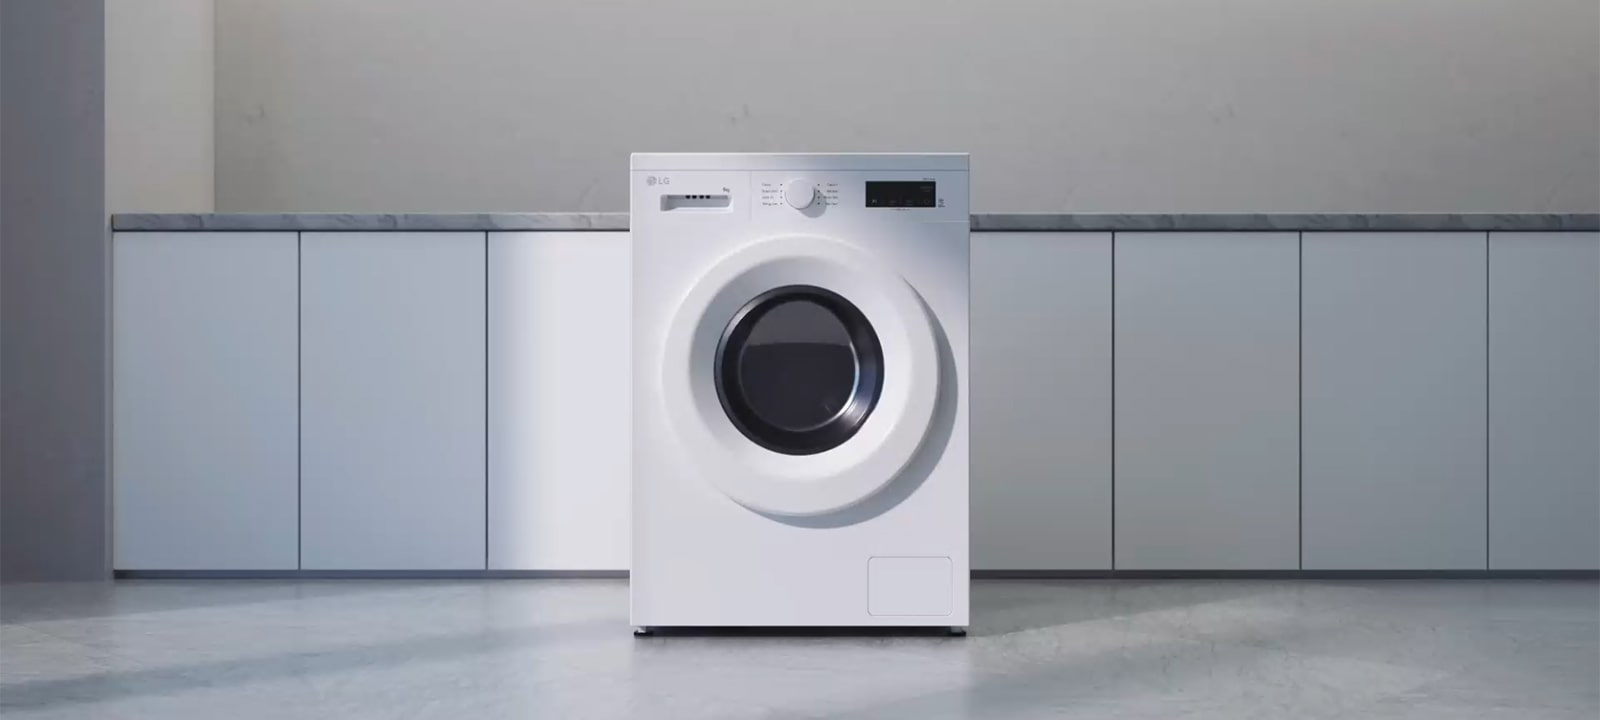 Hình ảnh cho thấy phần trên máy giặt có thể tháo rời và diện tích nhỏ gọn